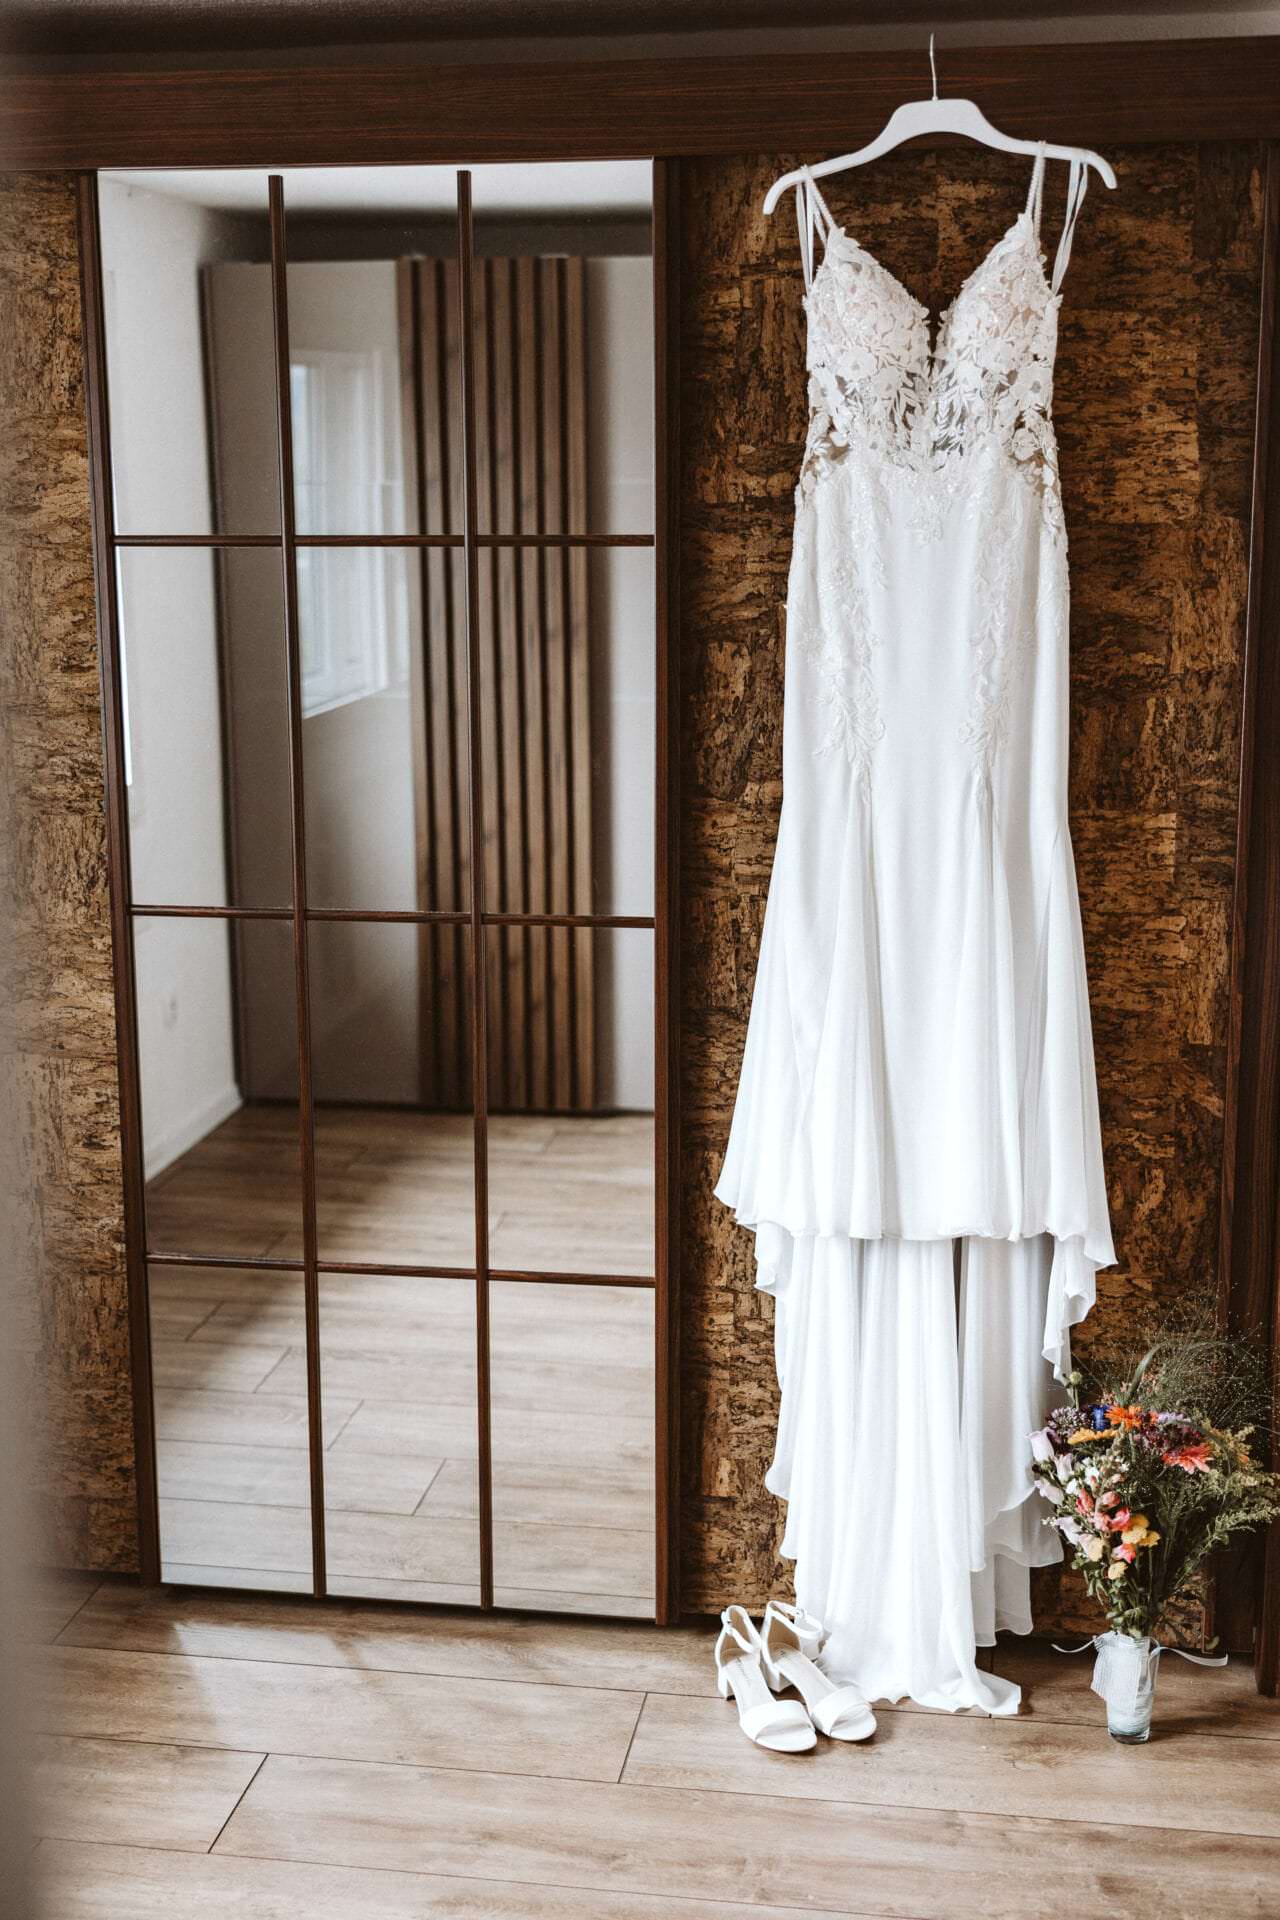 Hochzeitsfotograf Wesel Hochzeit Heiraten Hochzeitsfotos - Hochzeitskleid hängt auf einem weißen Kleiderbügel neben einem Spiegel. Unter dem Hochzeitskleid ist ein Blumenstrauß und Schuhe zu sehen